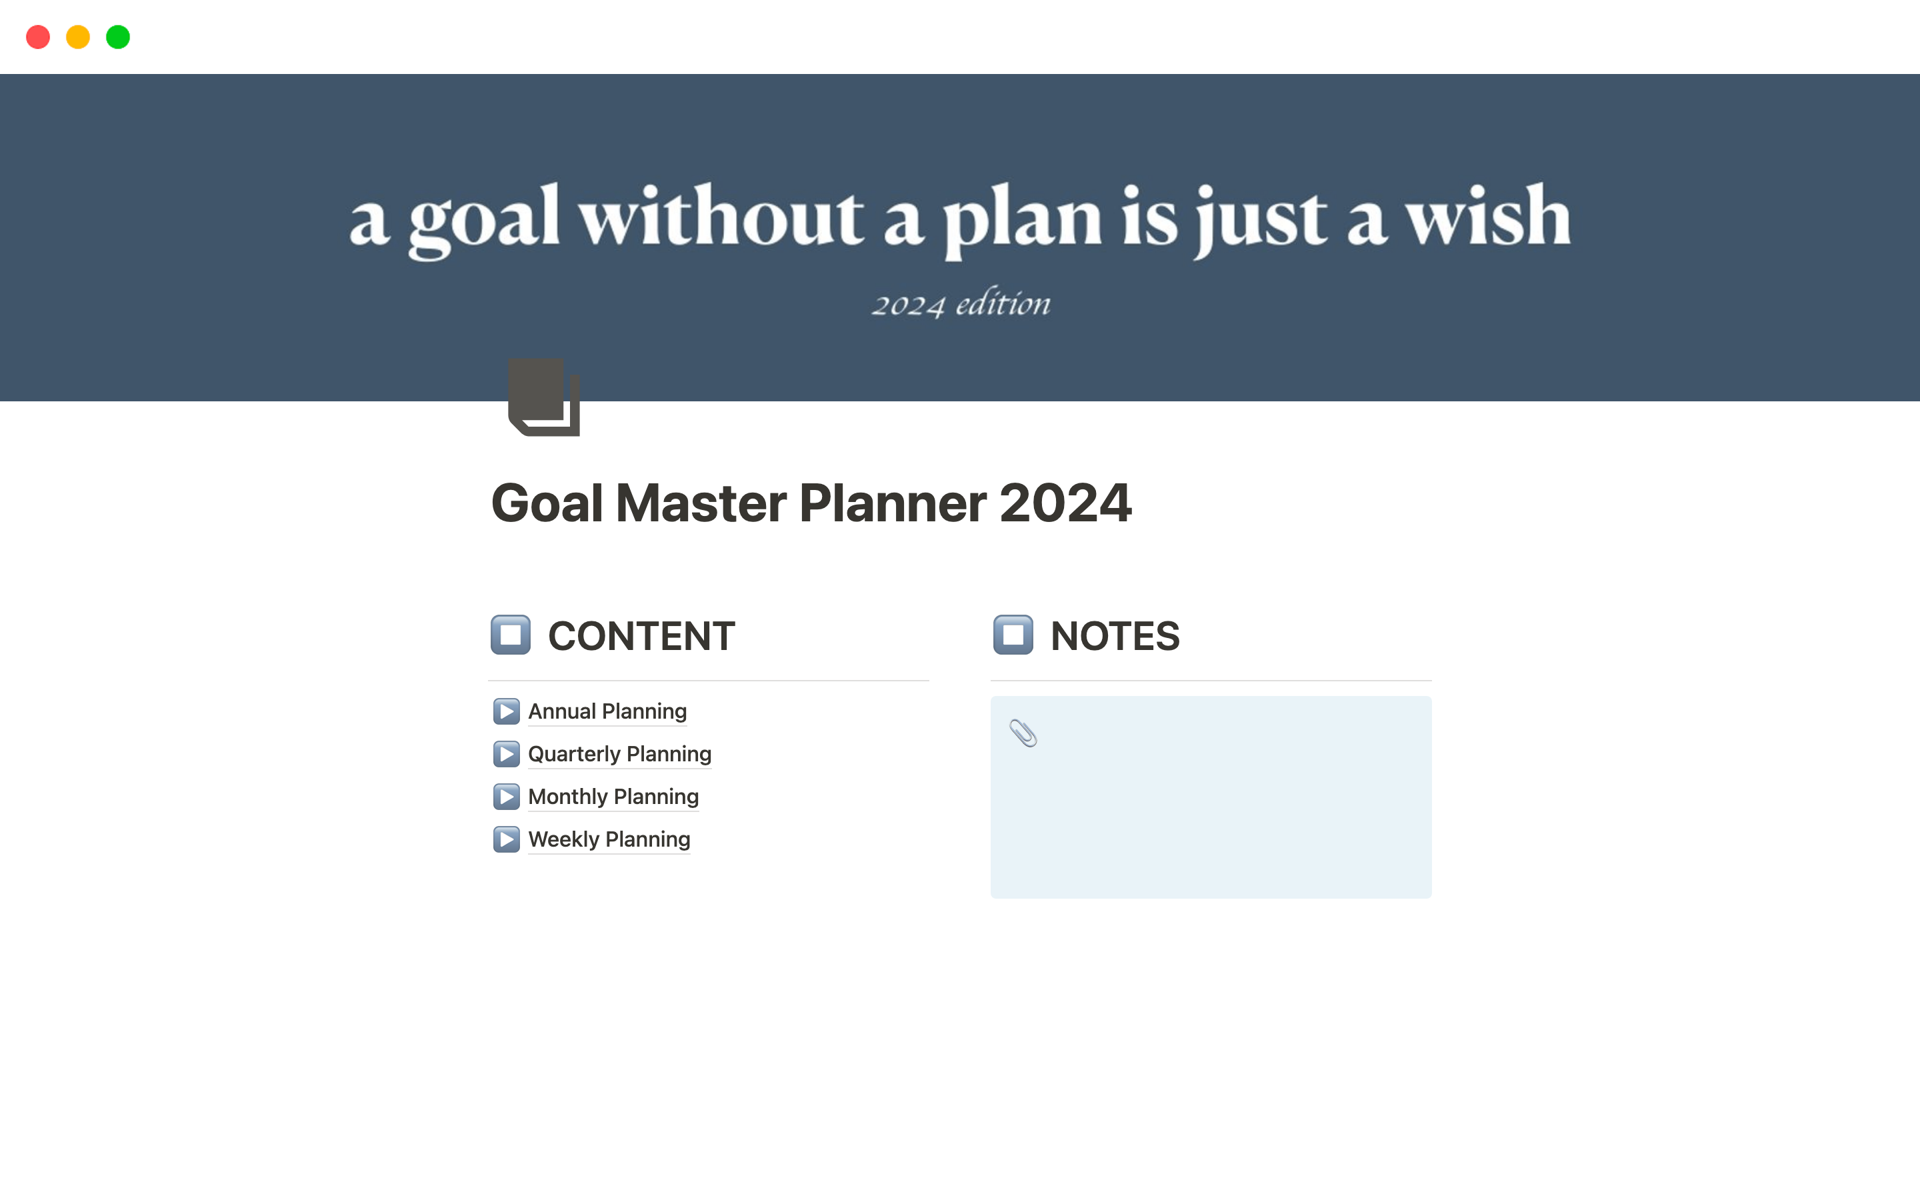 Aperçu du modèle de Goal Master Planner 2024